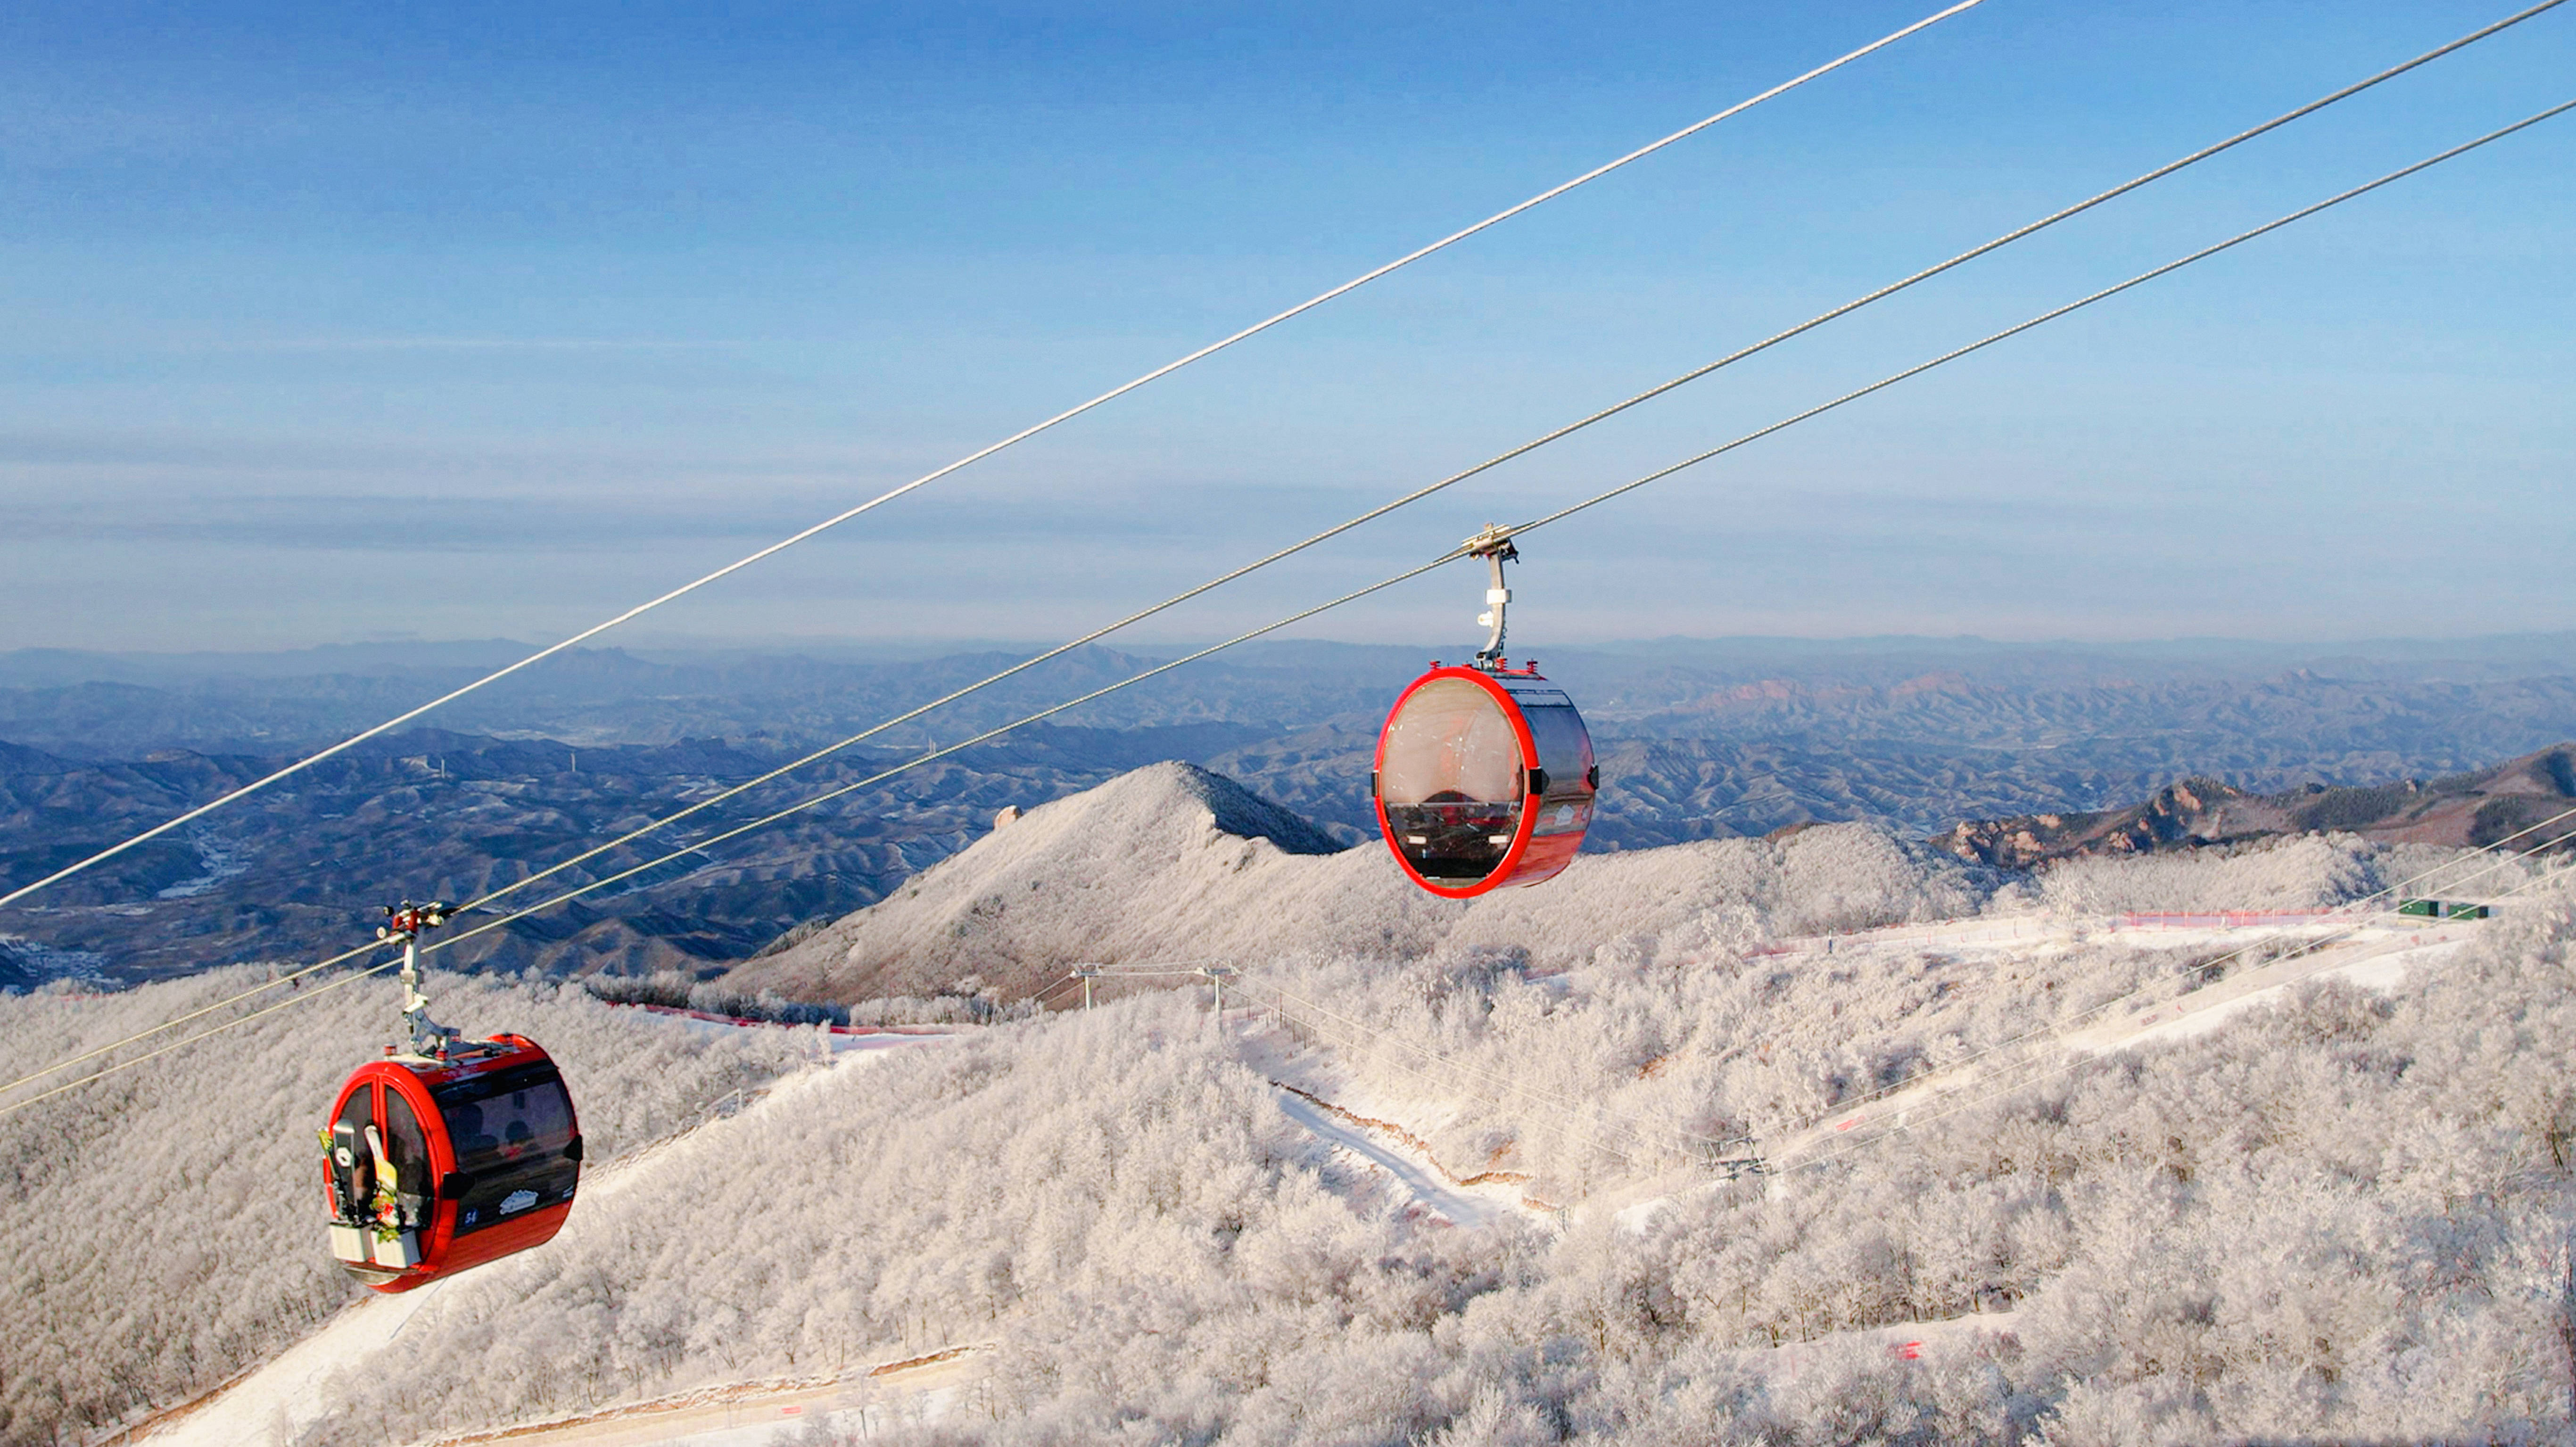 国家级滑雪旅游度假地 | 金山岭滑雪旅游度假区,滑雪